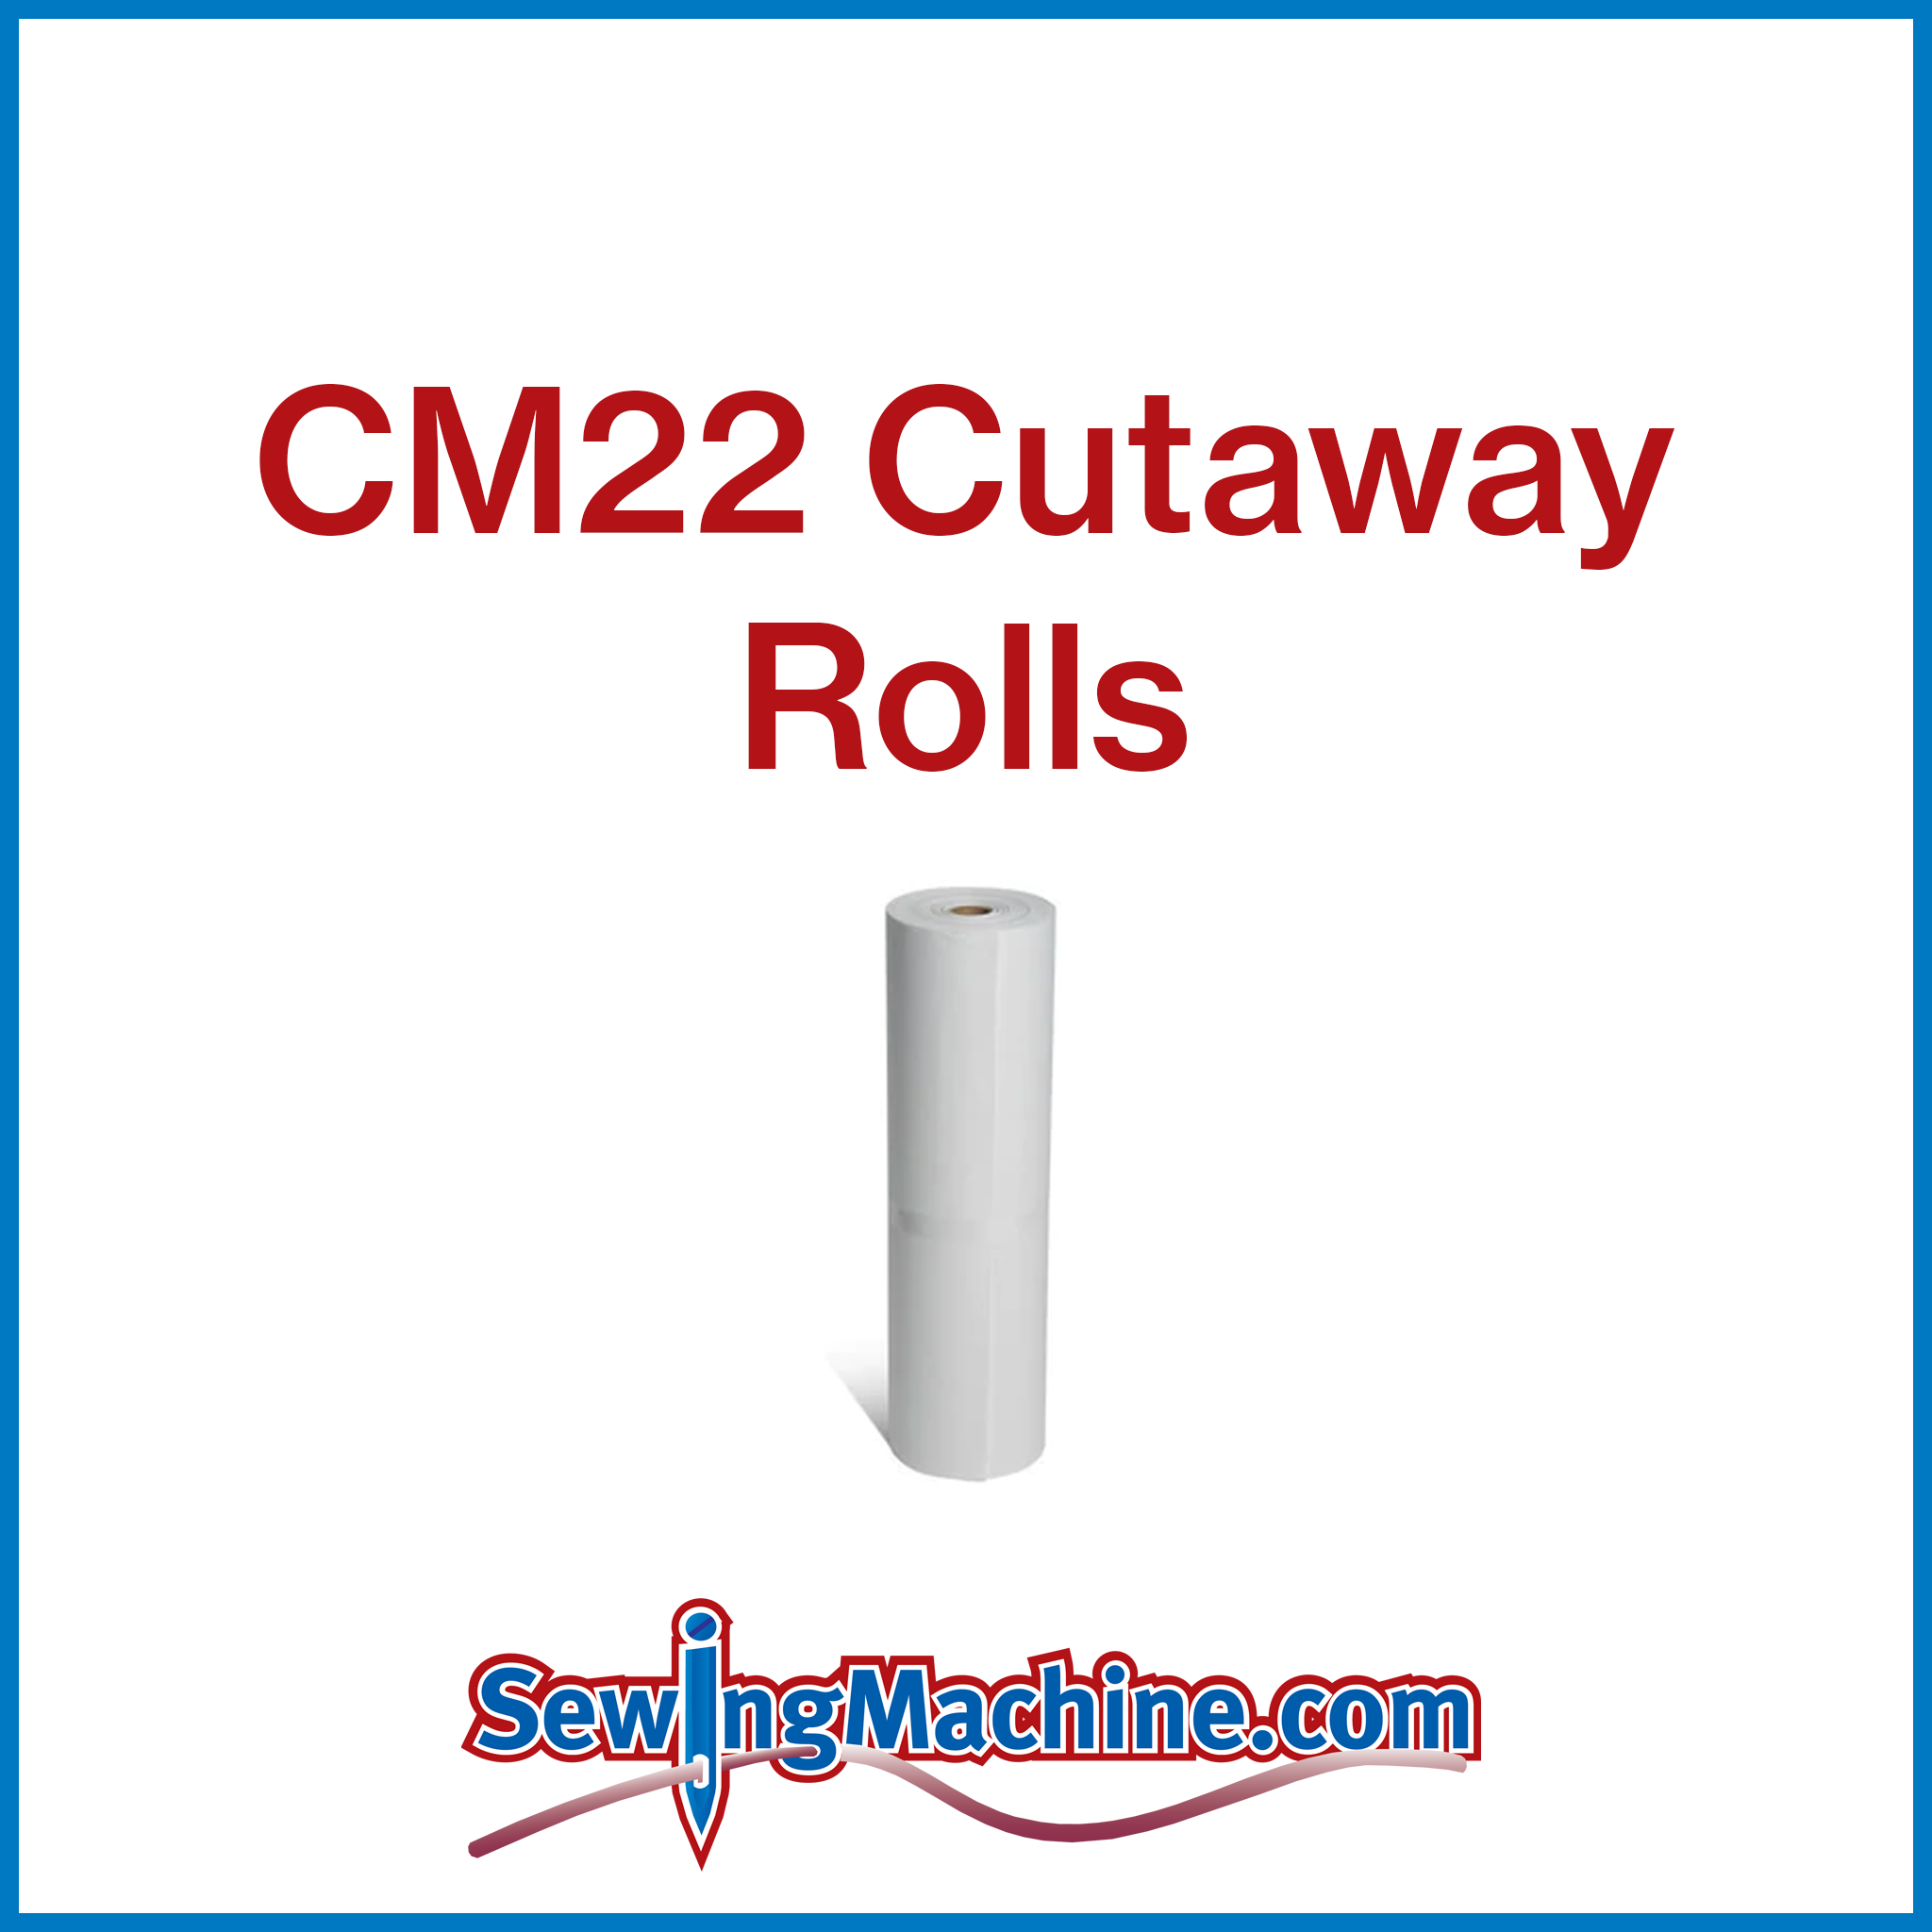 CM22A Cutaway 2.2oz Rolls